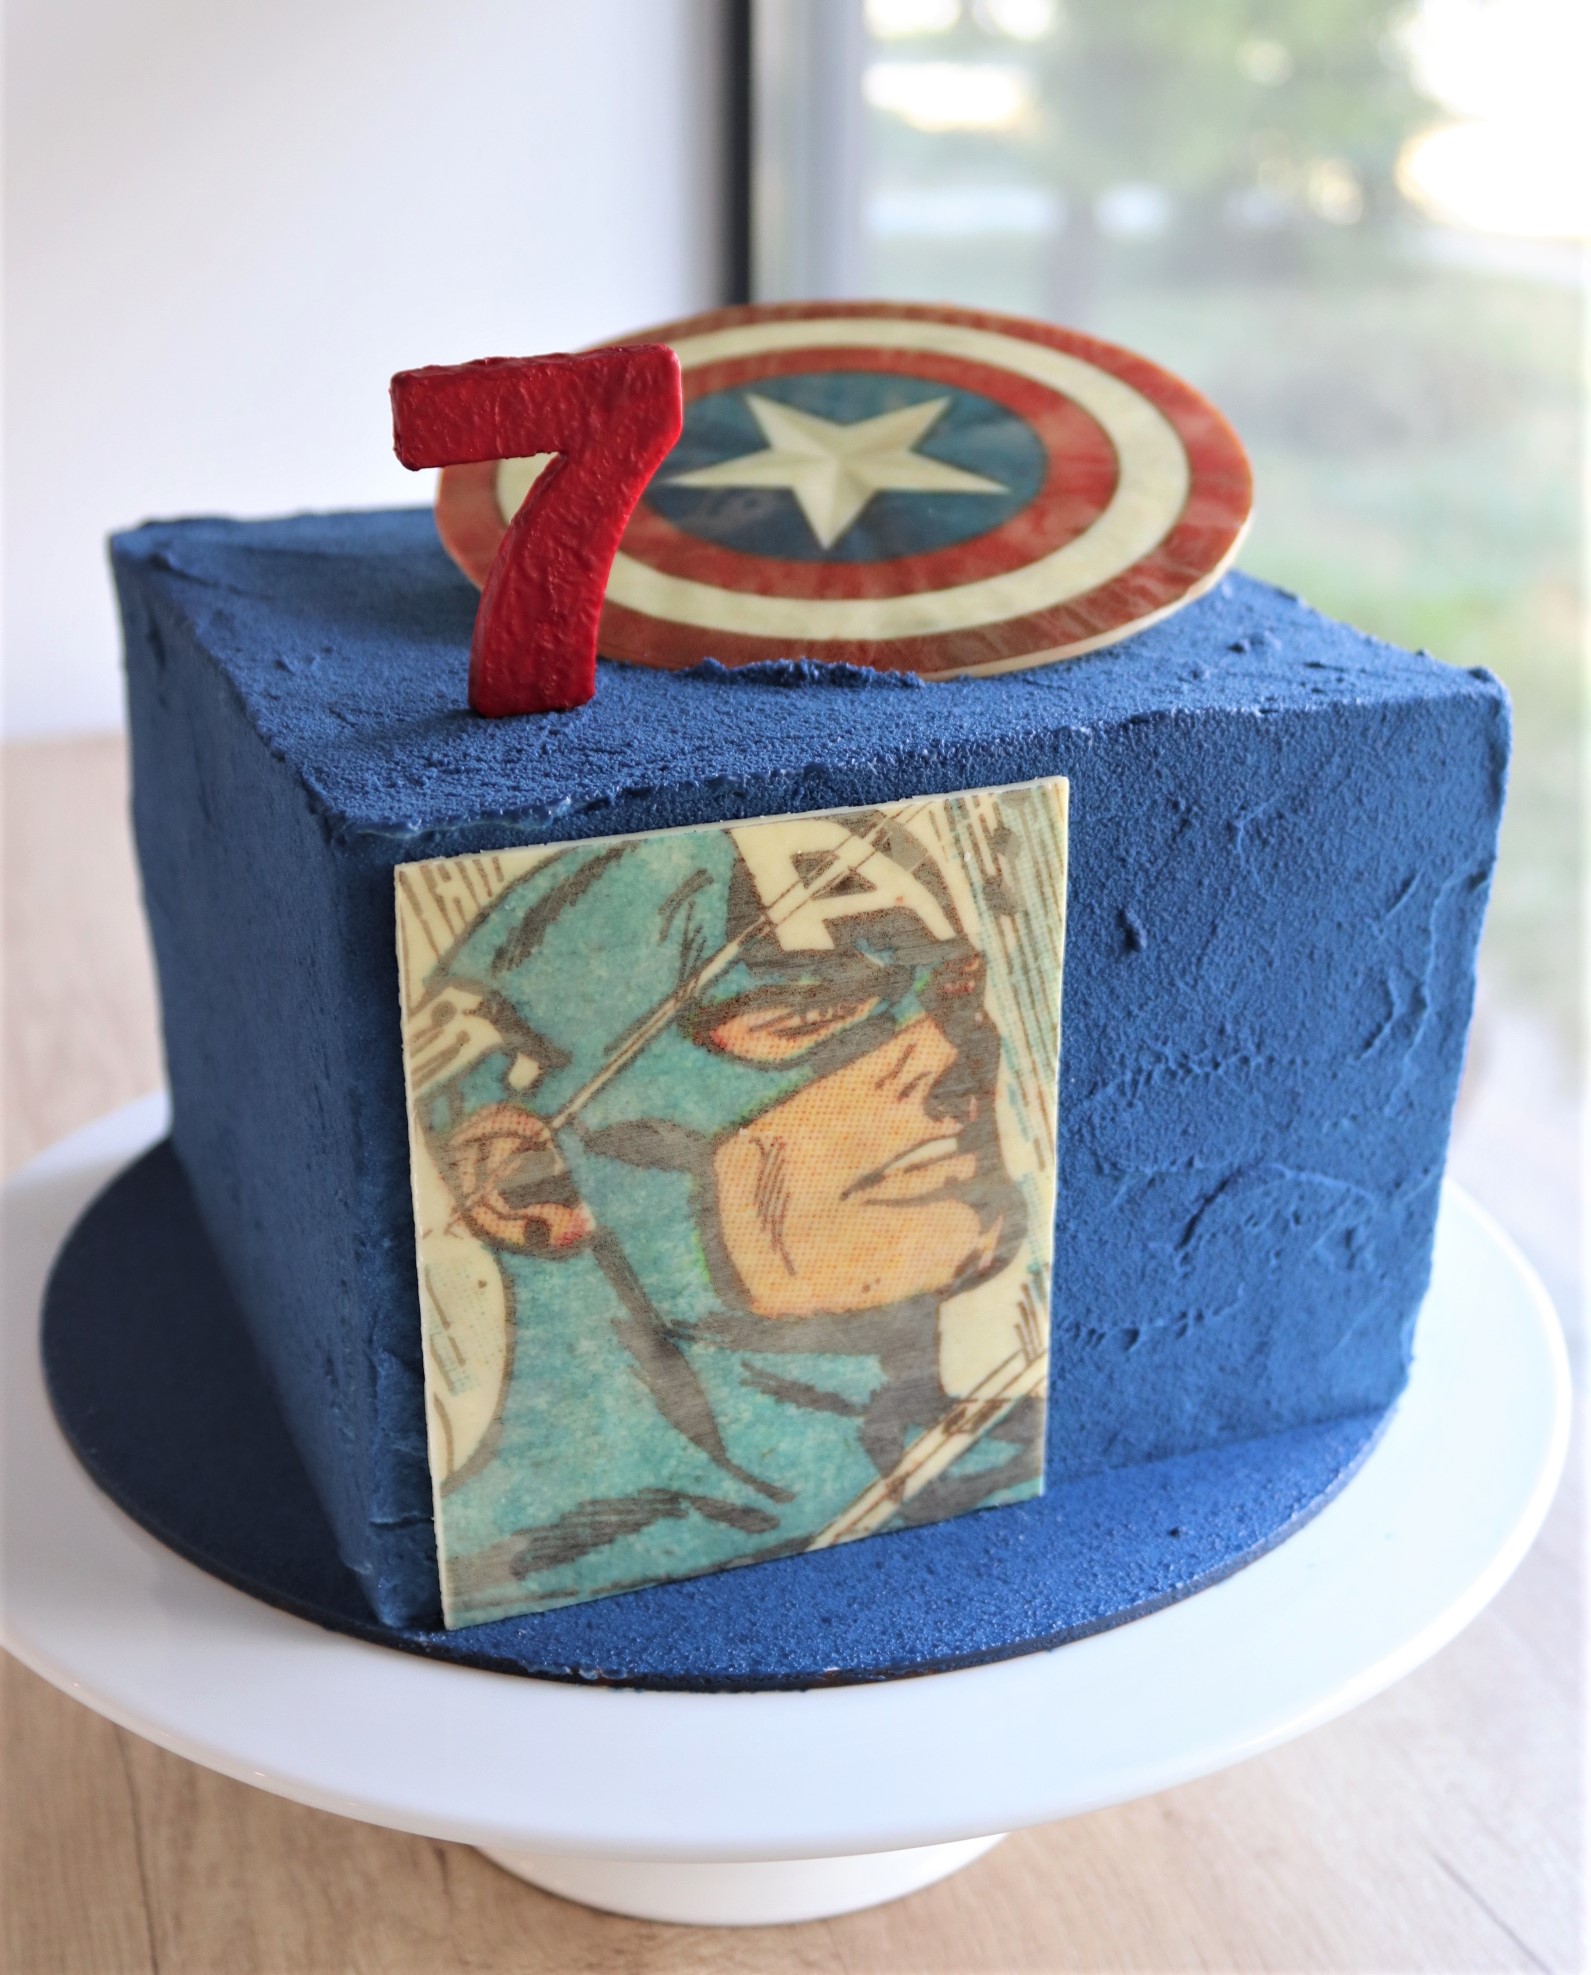 Торт для мальчика который стремится быть таким же сильным как Капитан Америка